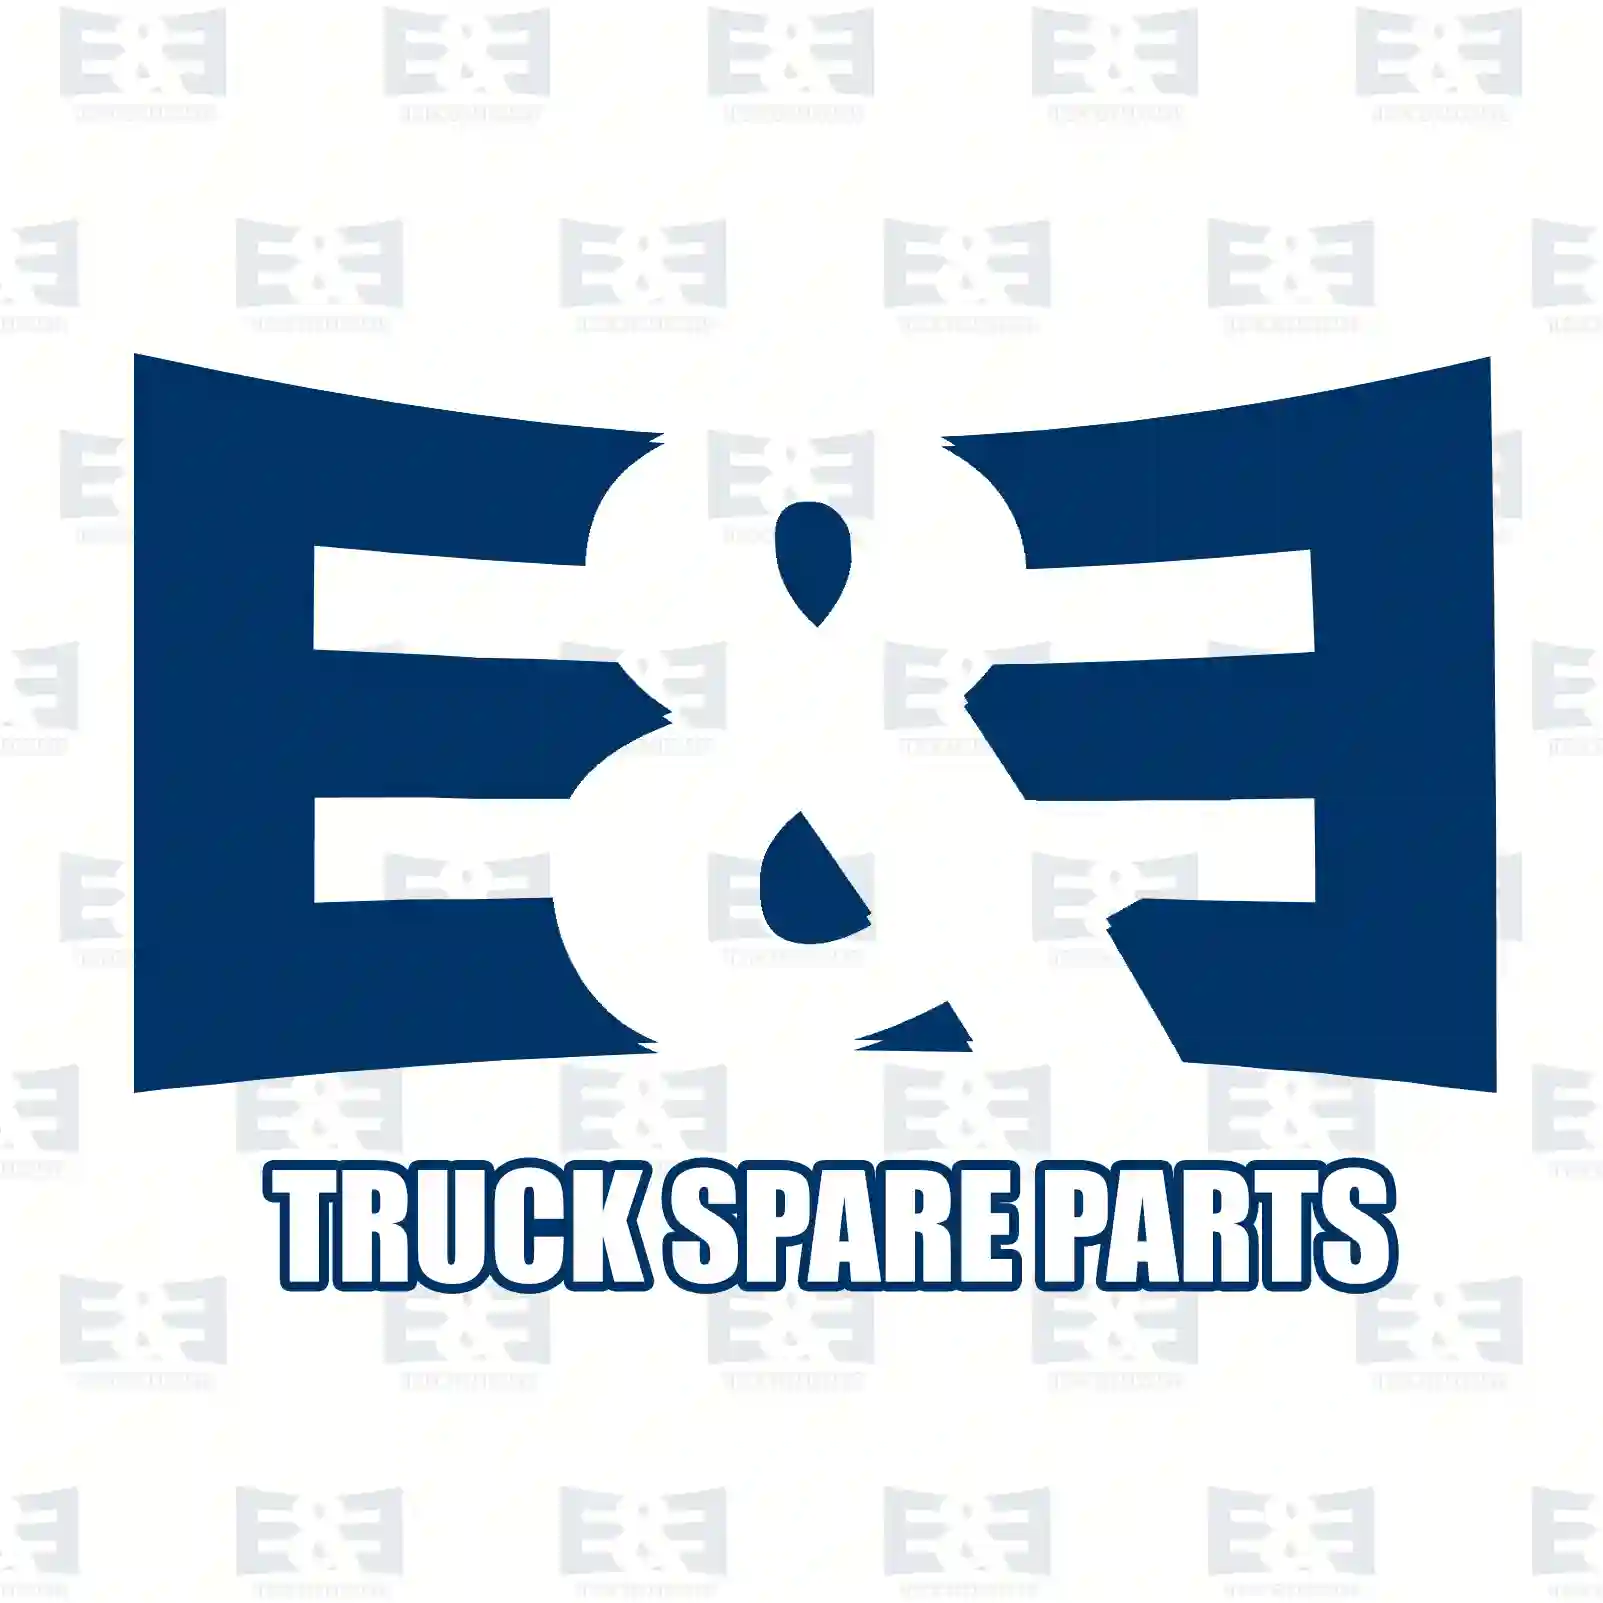 O-ring, 2E2285405, 1304985, 1304985 ||  2E2285405 E&E Truck Spare Parts | Truck Spare Parts, Auotomotive Spare Parts O-ring, 2E2285405, 1304985, 1304985 ||  2E2285405 E&E Truck Spare Parts | Truck Spare Parts, Auotomotive Spare Parts